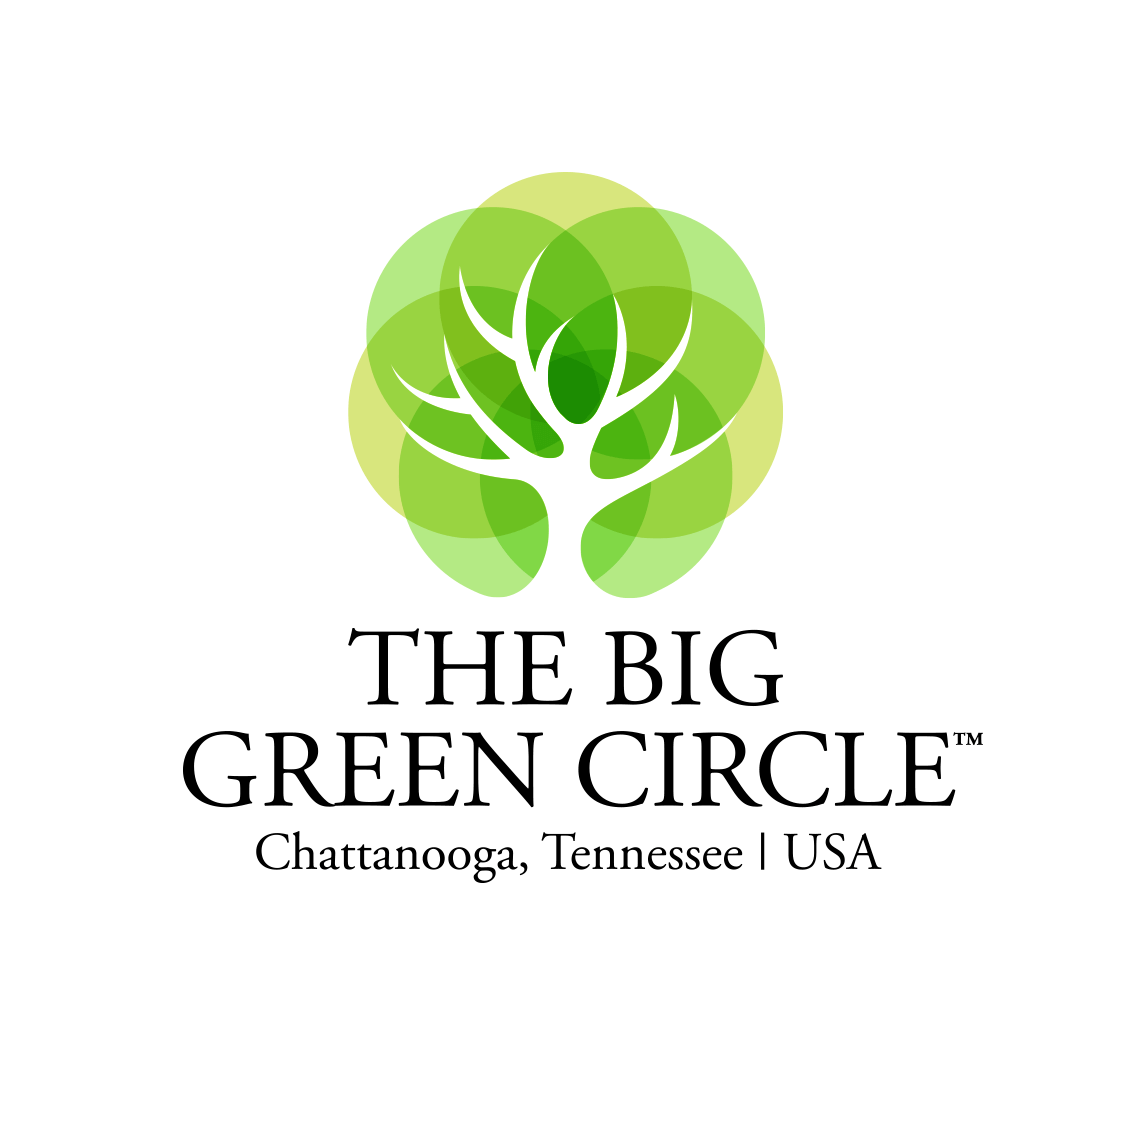 The Big Green Circle